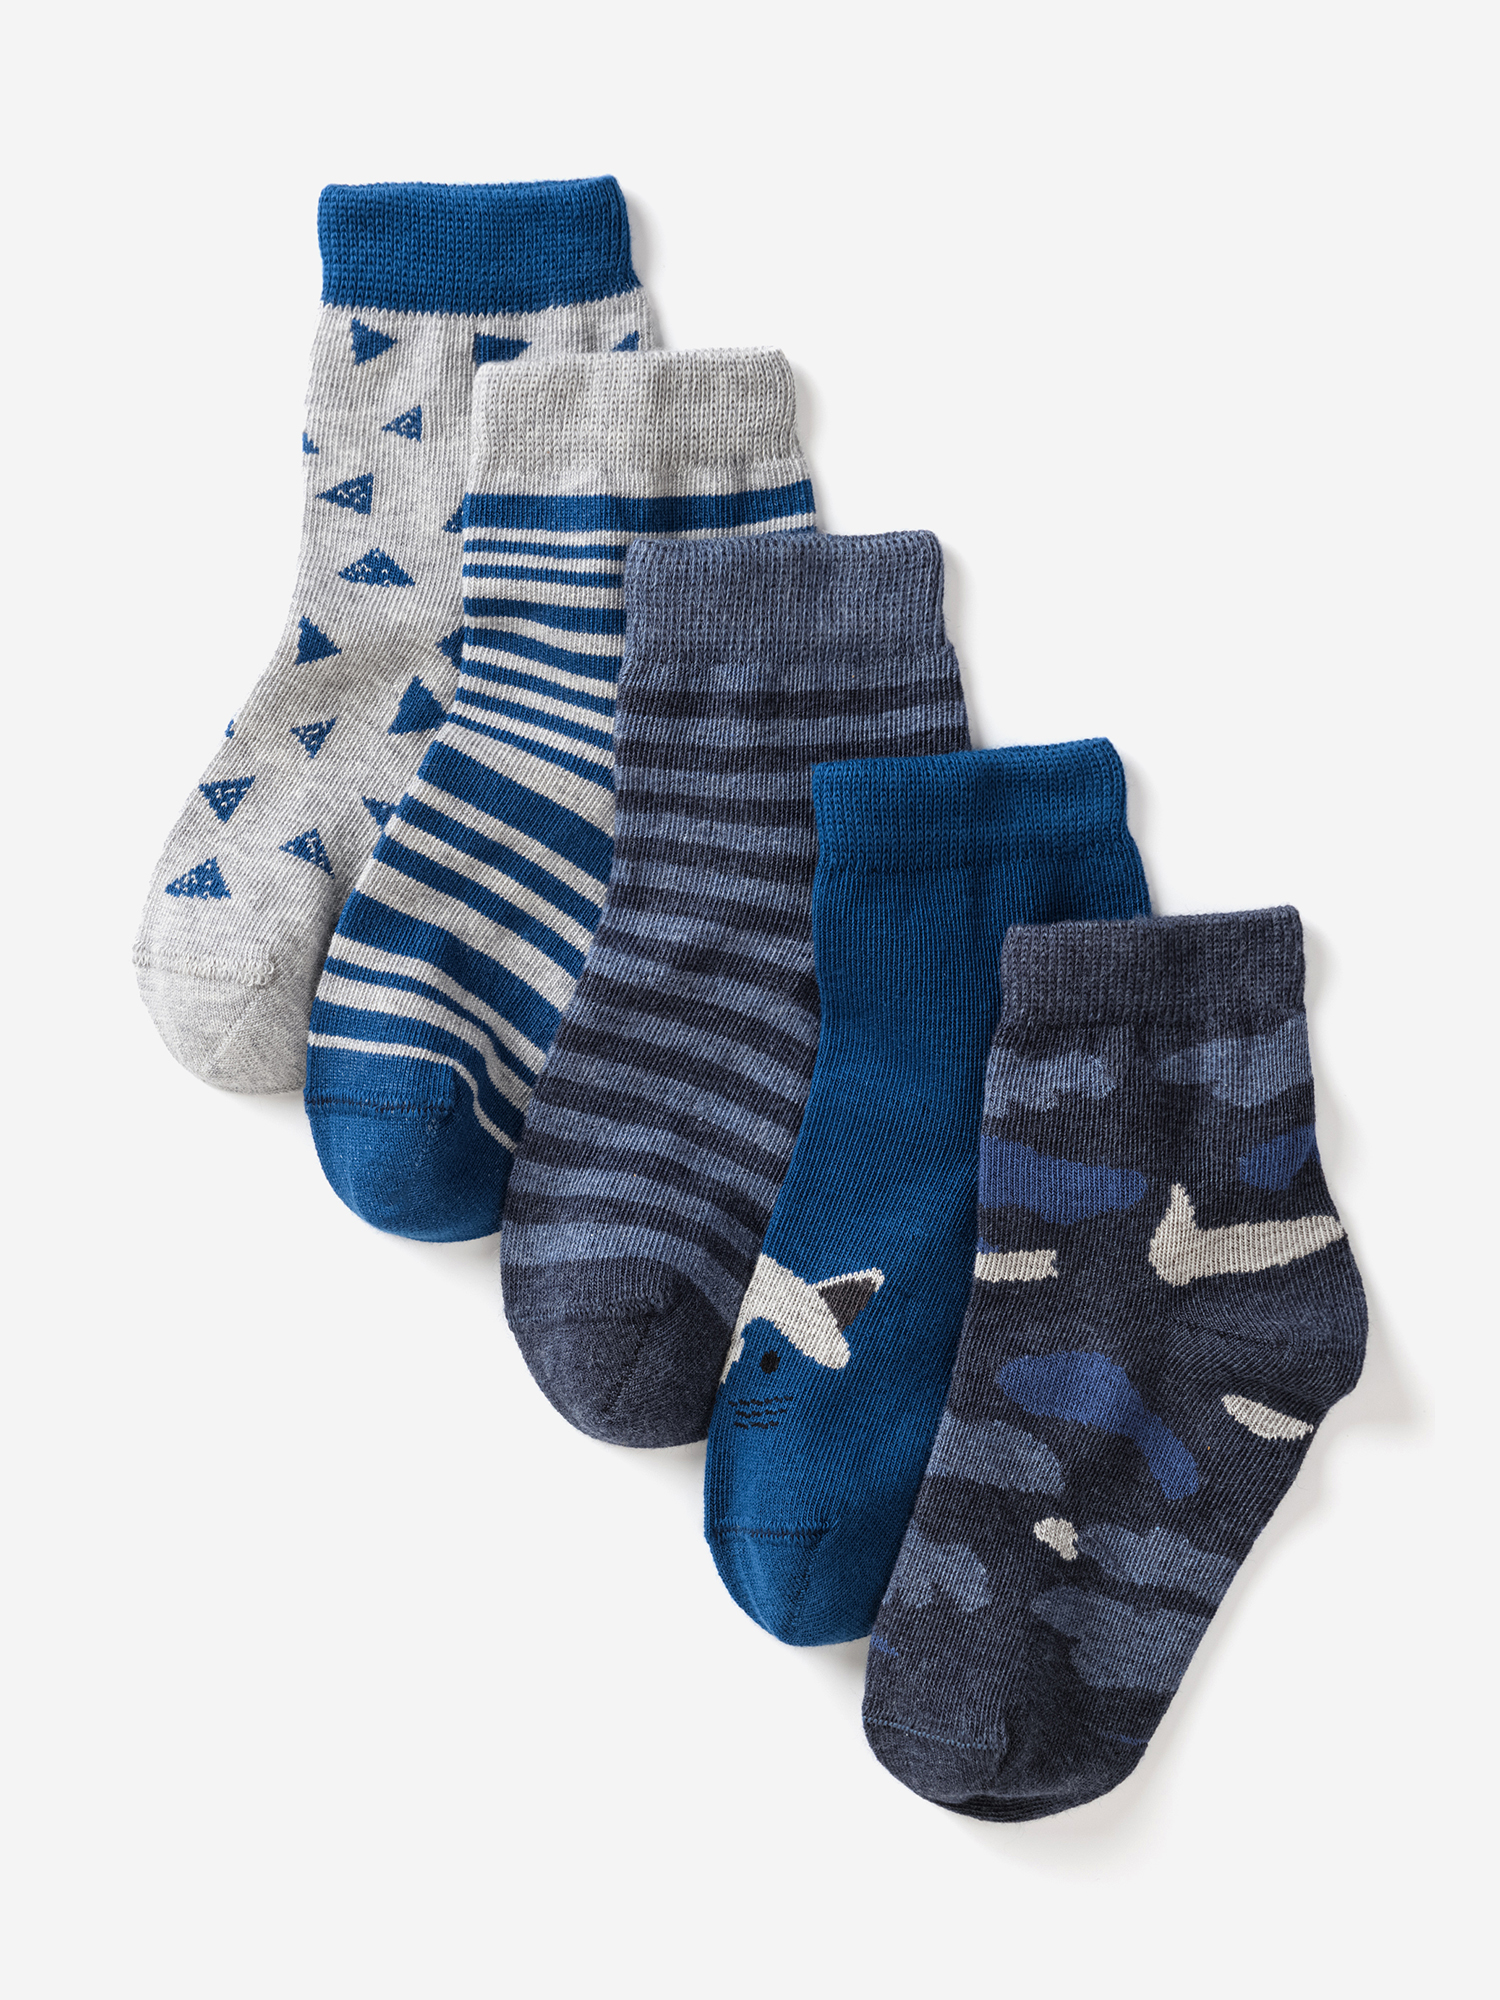 Носки для детей малышей хлопок набор 5 пары Artie, Синий носки для детей малышей хлопок набор 5 пары artie синий